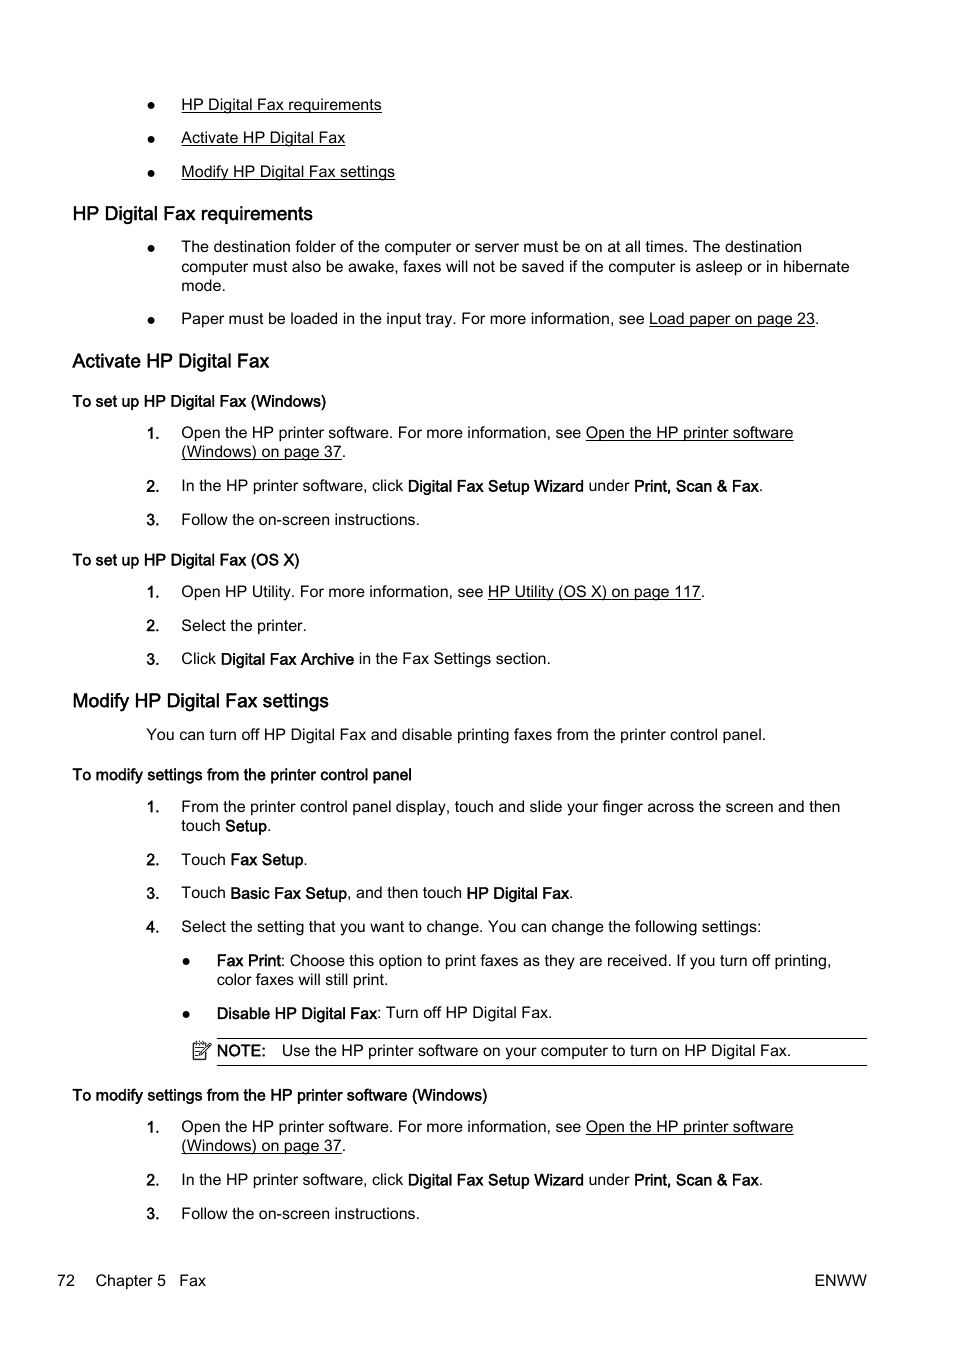 Hp digital fax requirements, Activate hp digital fax, Modify hp digital